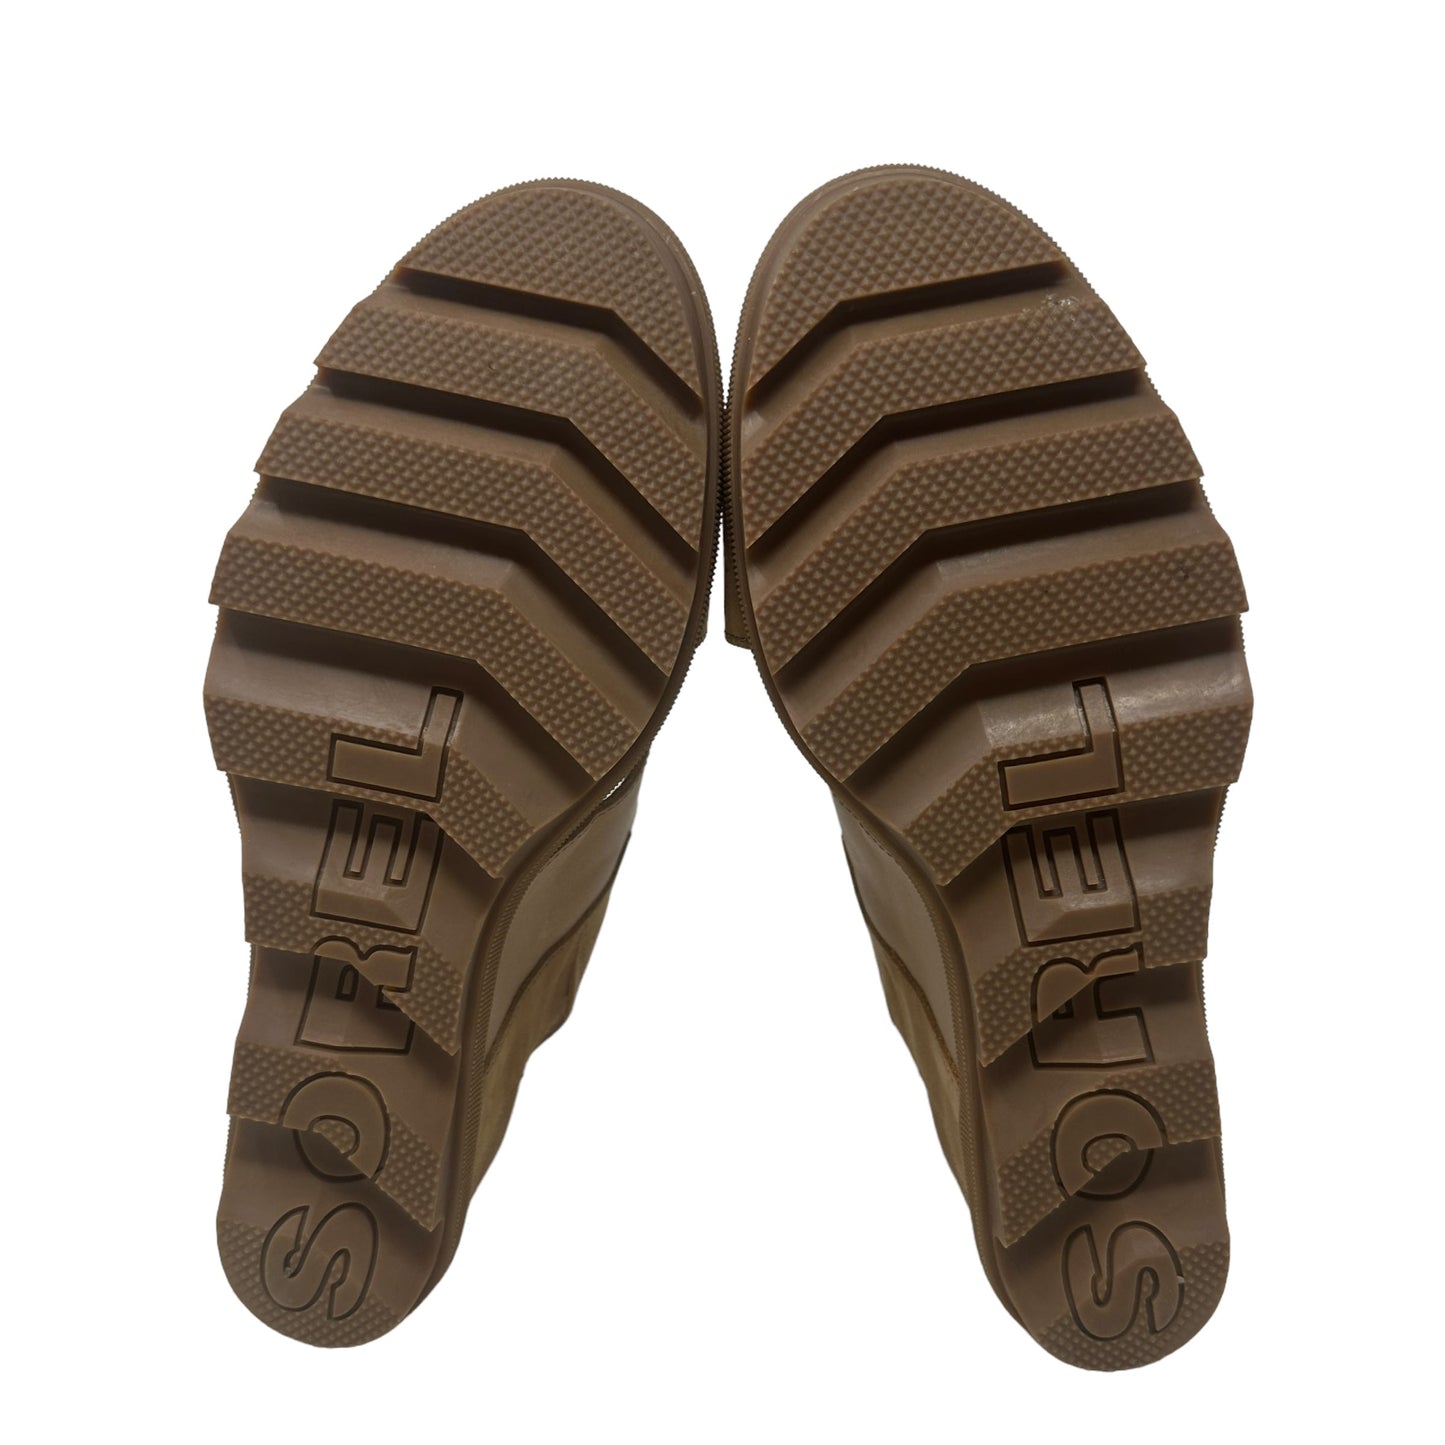 Joanie ll Slingback Wedge Sandal
 By Sorel  Size: 11